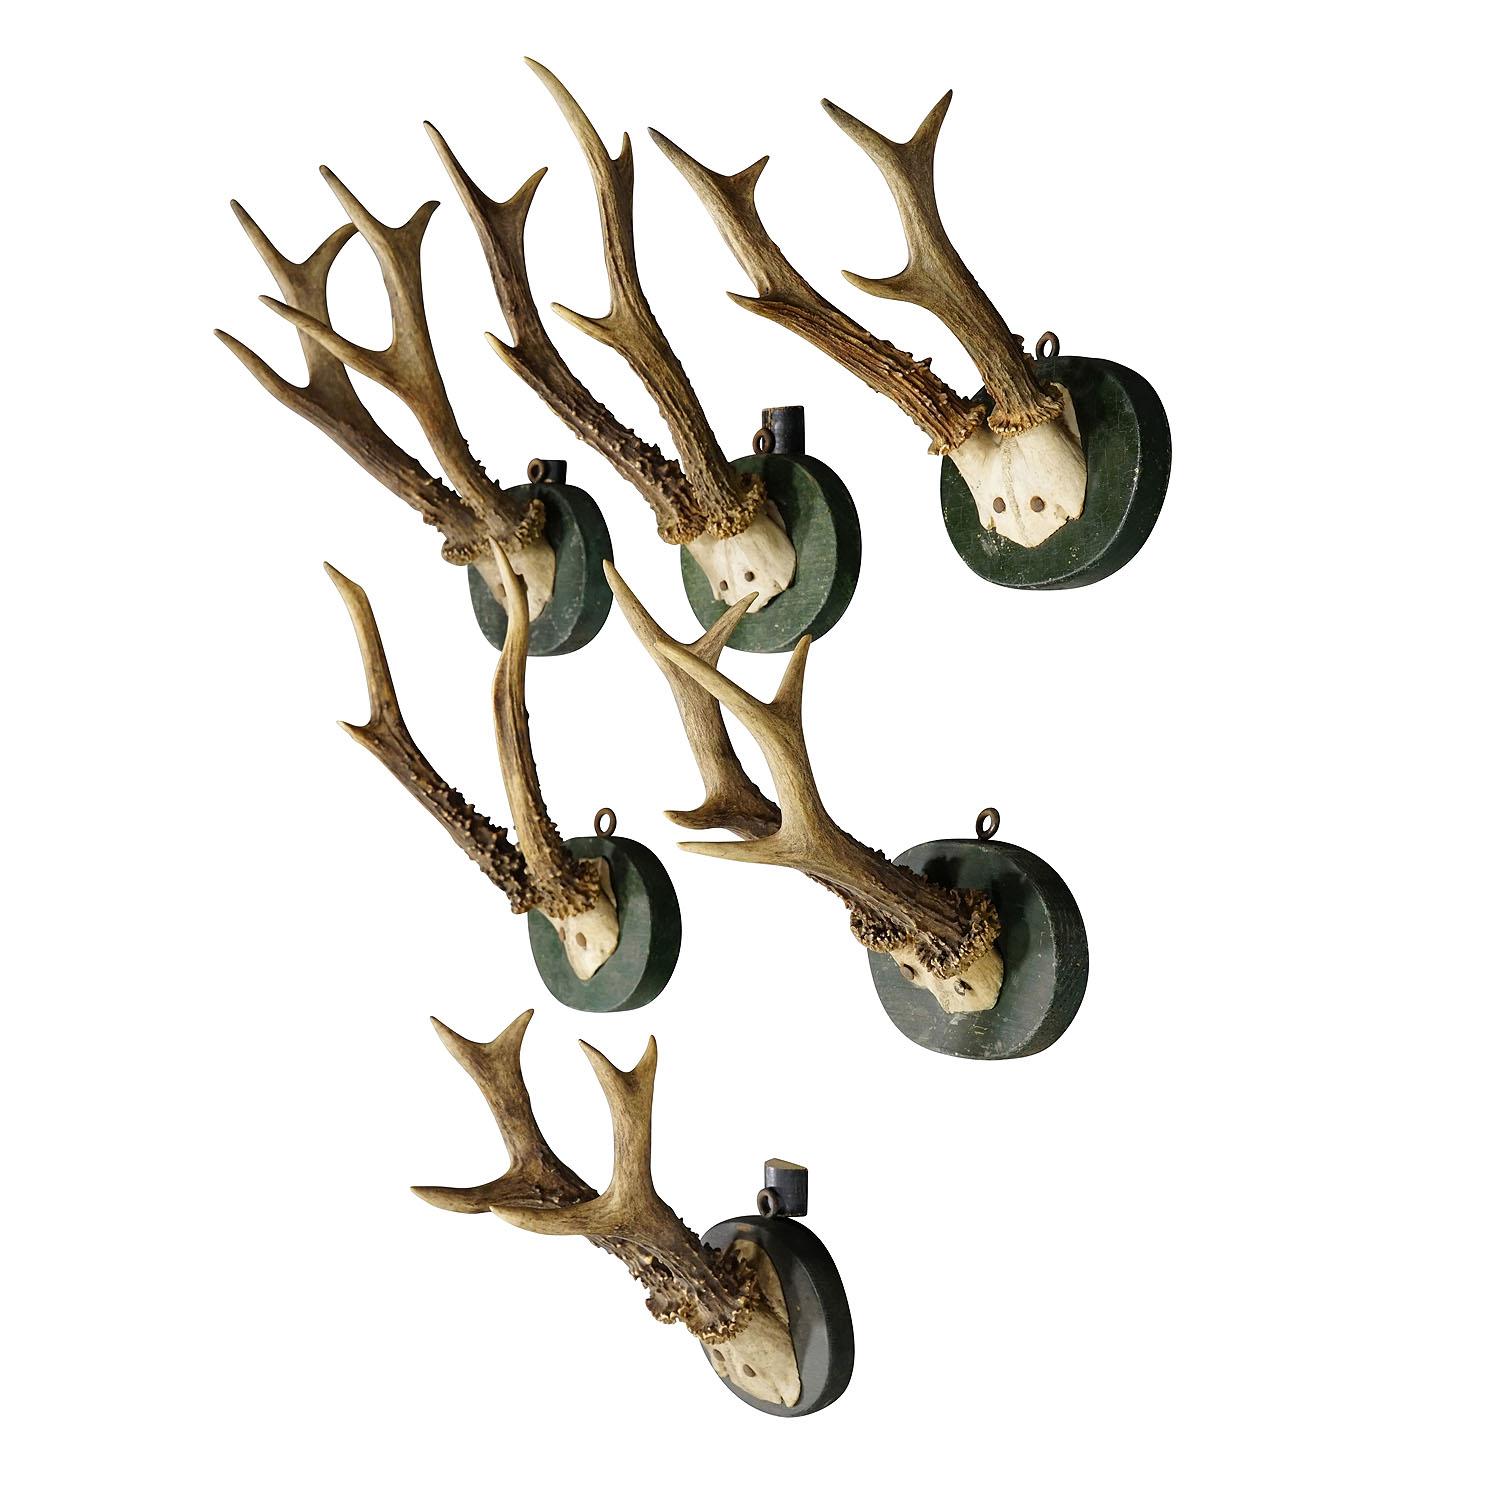 Ensemble de trophées de cerfs de Black Forest des années 1880 sur plaques en bois tourné

Ensemble de six trophées anciens de chevreuil (Capreolus capreolus) de la Forêt-Noire, montés sur des plaques en bois tourné, avec une finition vert foncé. Les